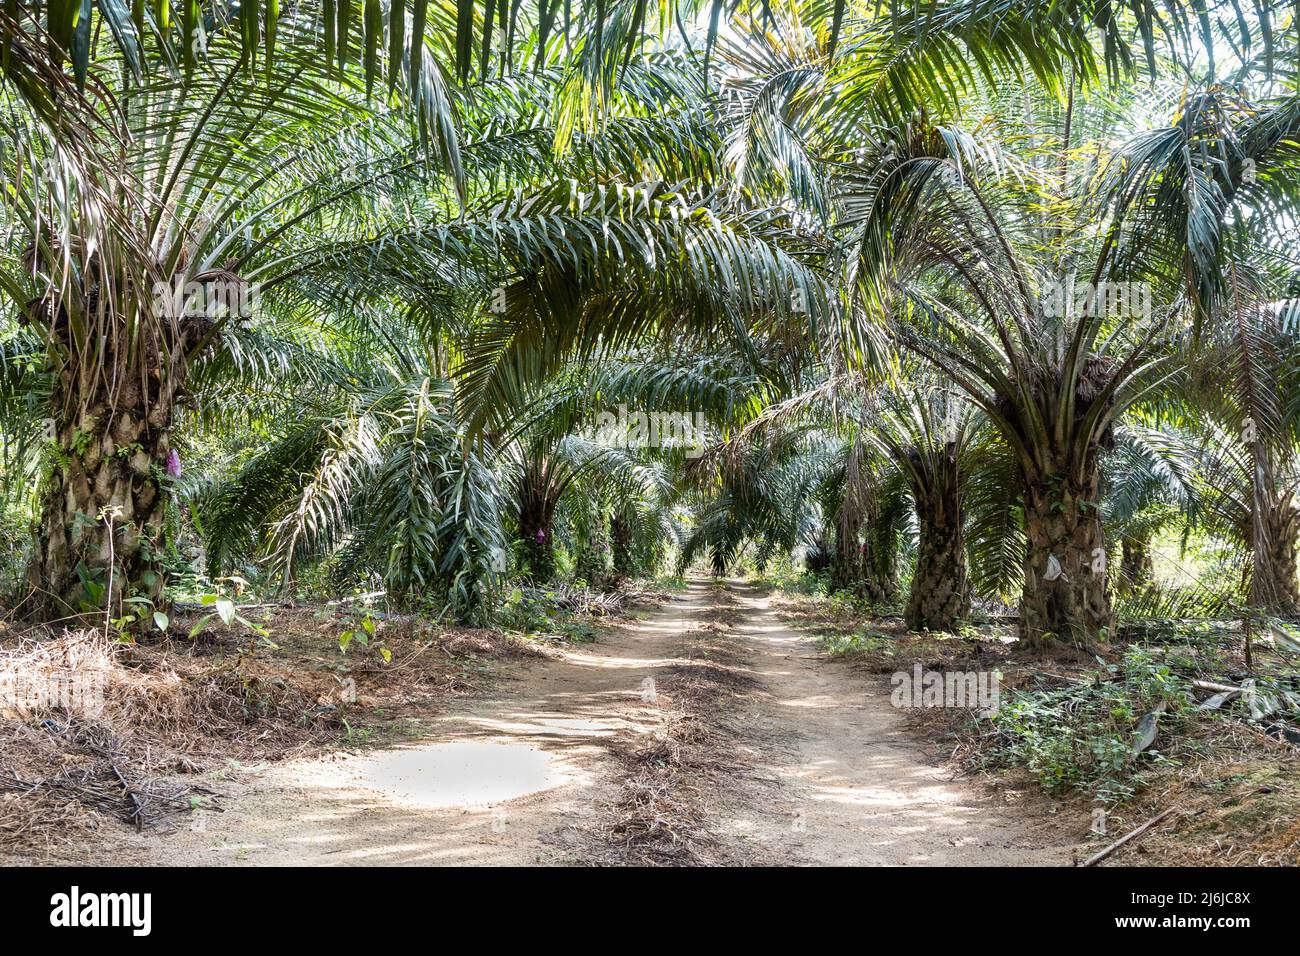 Strada che conduce alla piantagione di palme da olio con palme da olio su entrambi i lati della strada Foto Stock